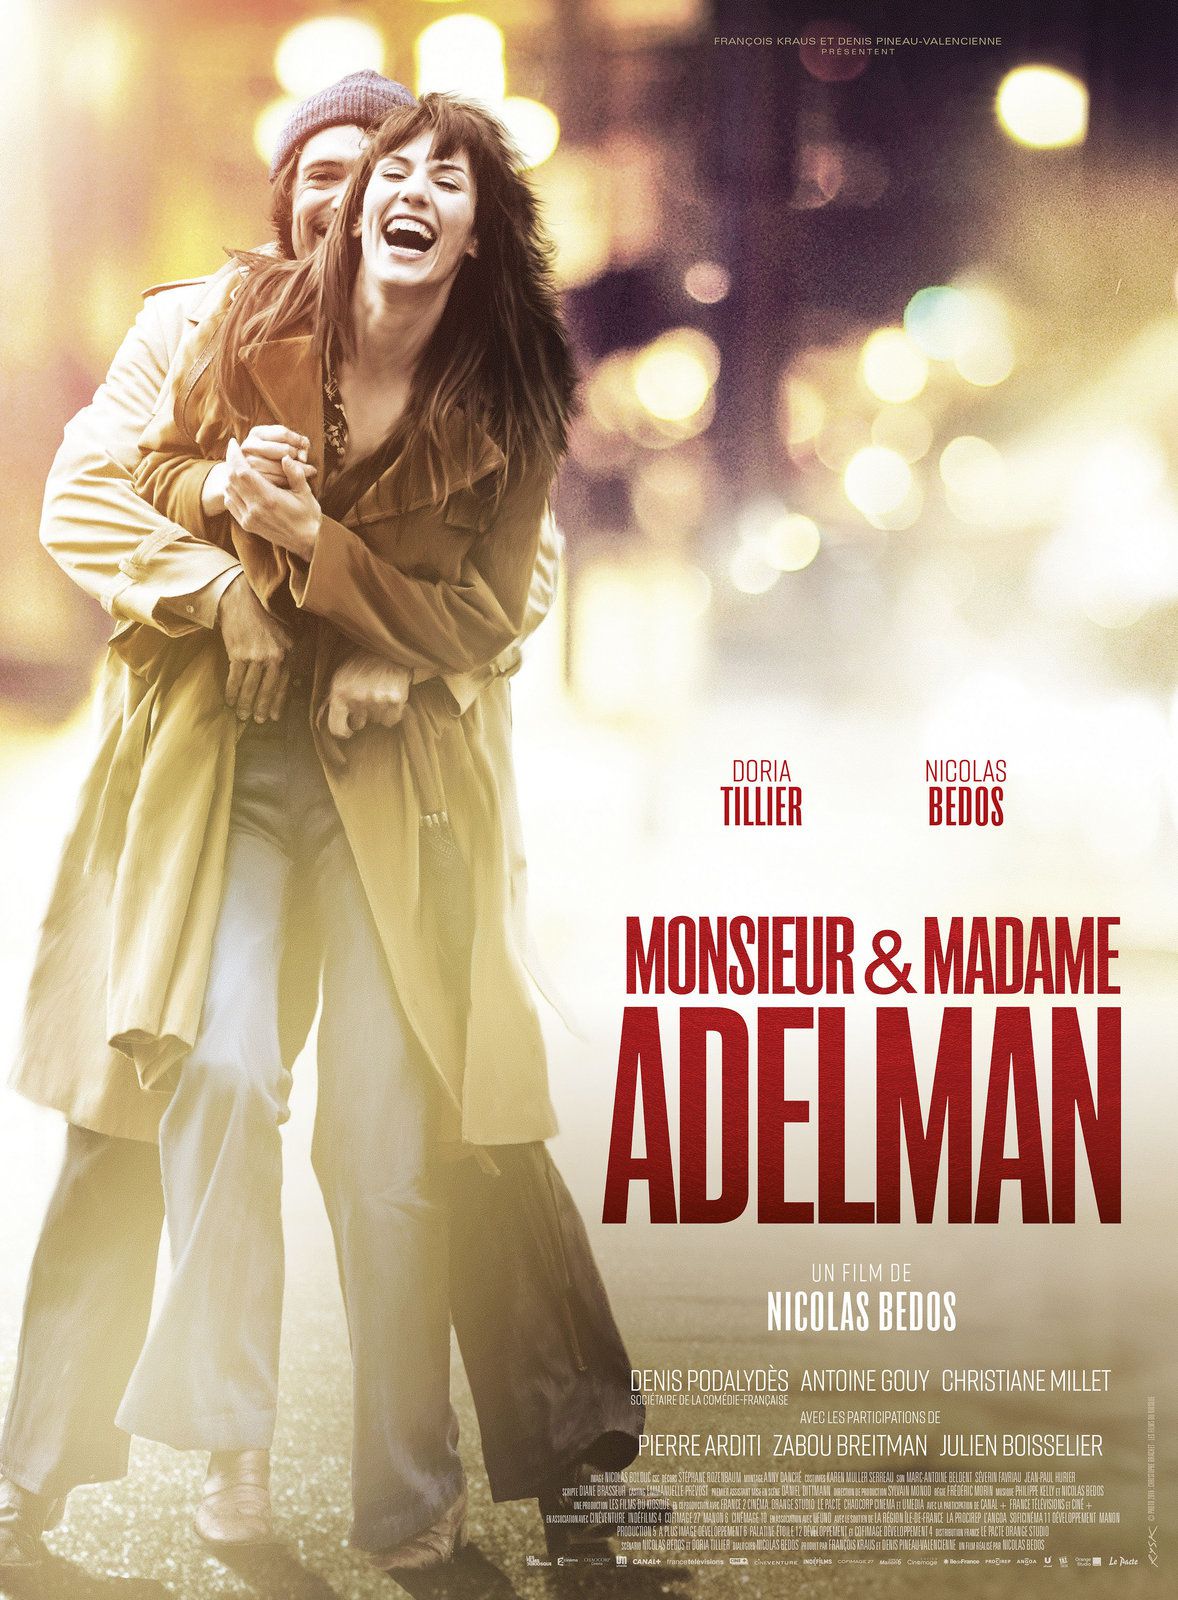 MAKING-OF : Monsieur &amp; Madame Adelman, un couple au cinéma le 8 mars 2017 !